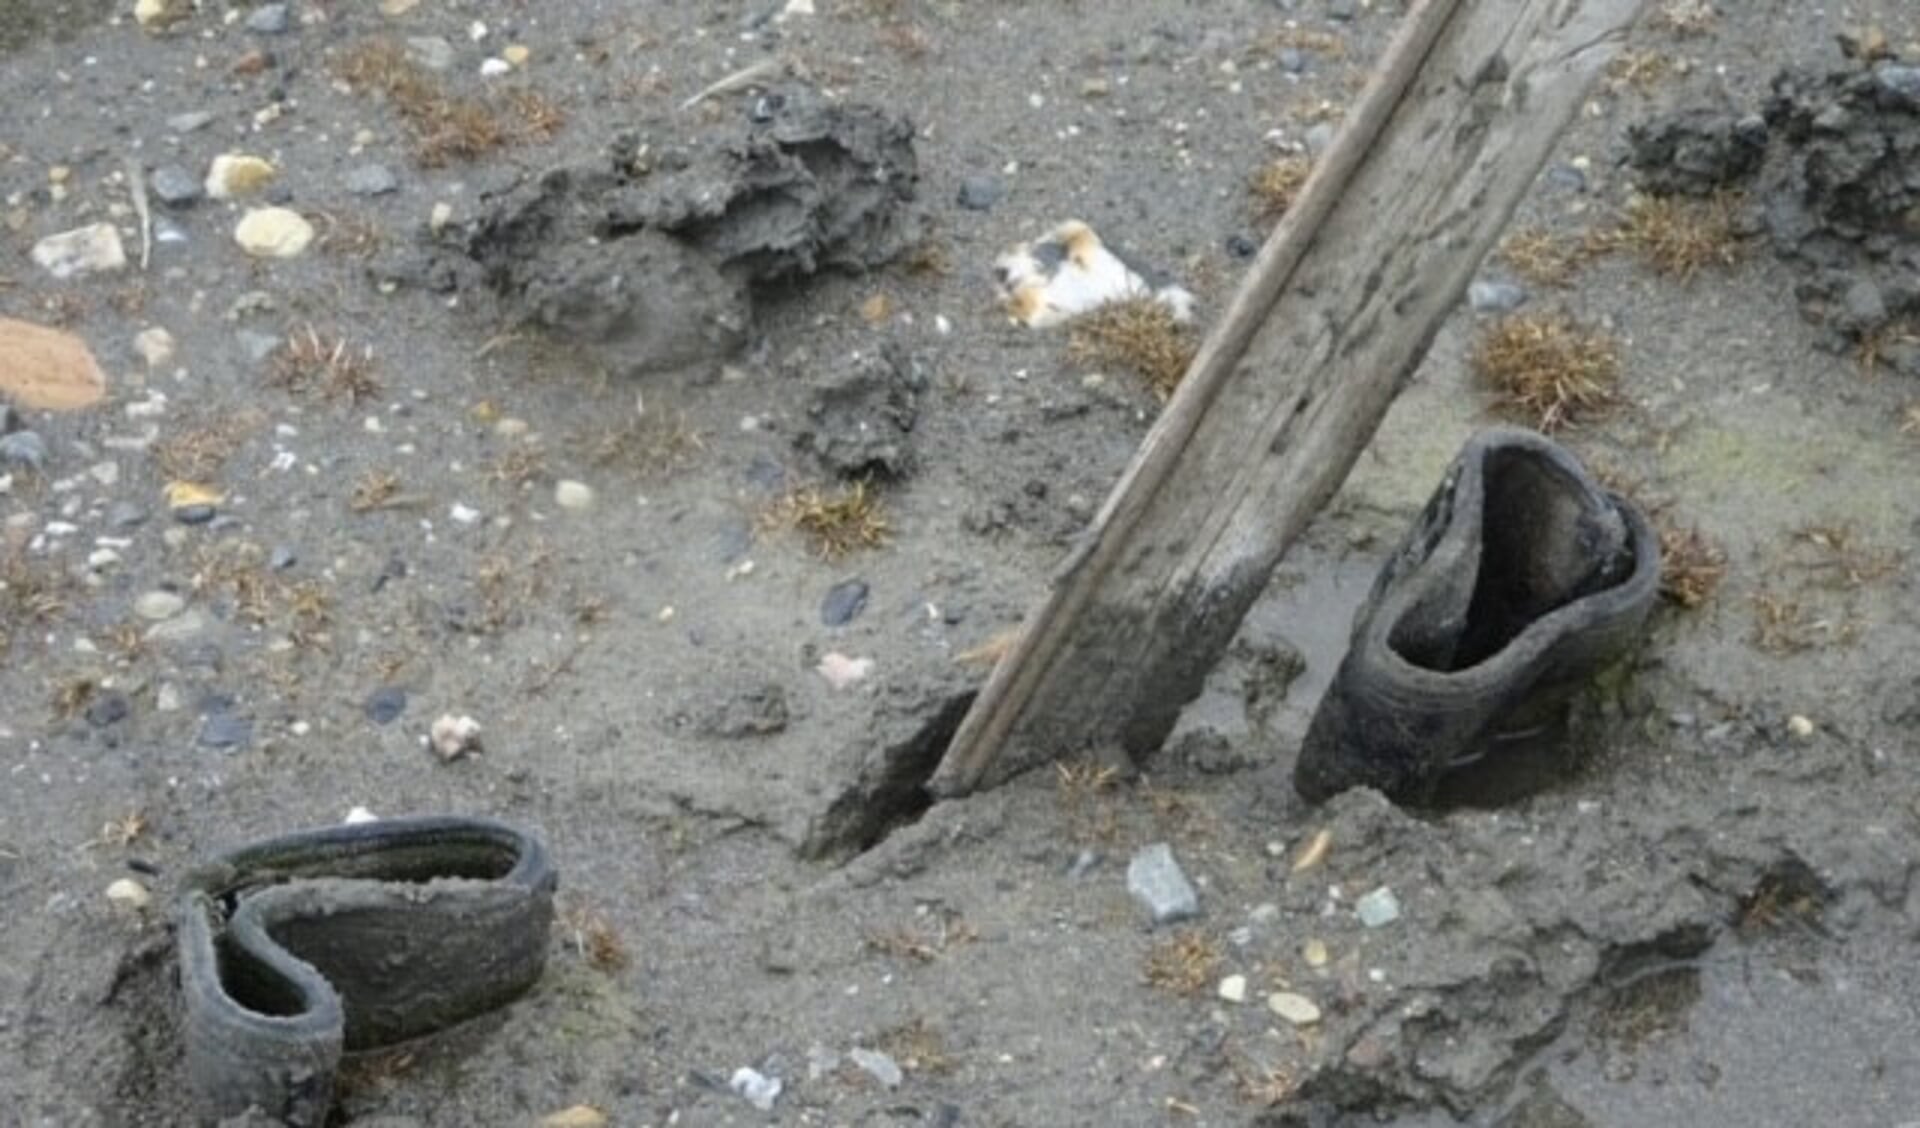 Deze foto is genomen tijdens een zeilreis rondom Spitsbergen. Daar zagen we deze achtergelaten, in de blubber vastgezogen laarzen. Iemand is klaarblijkelijk vast komen te zitten en moest ondanks het koude klimaat verder zonder laarzen. Een bizar idee.